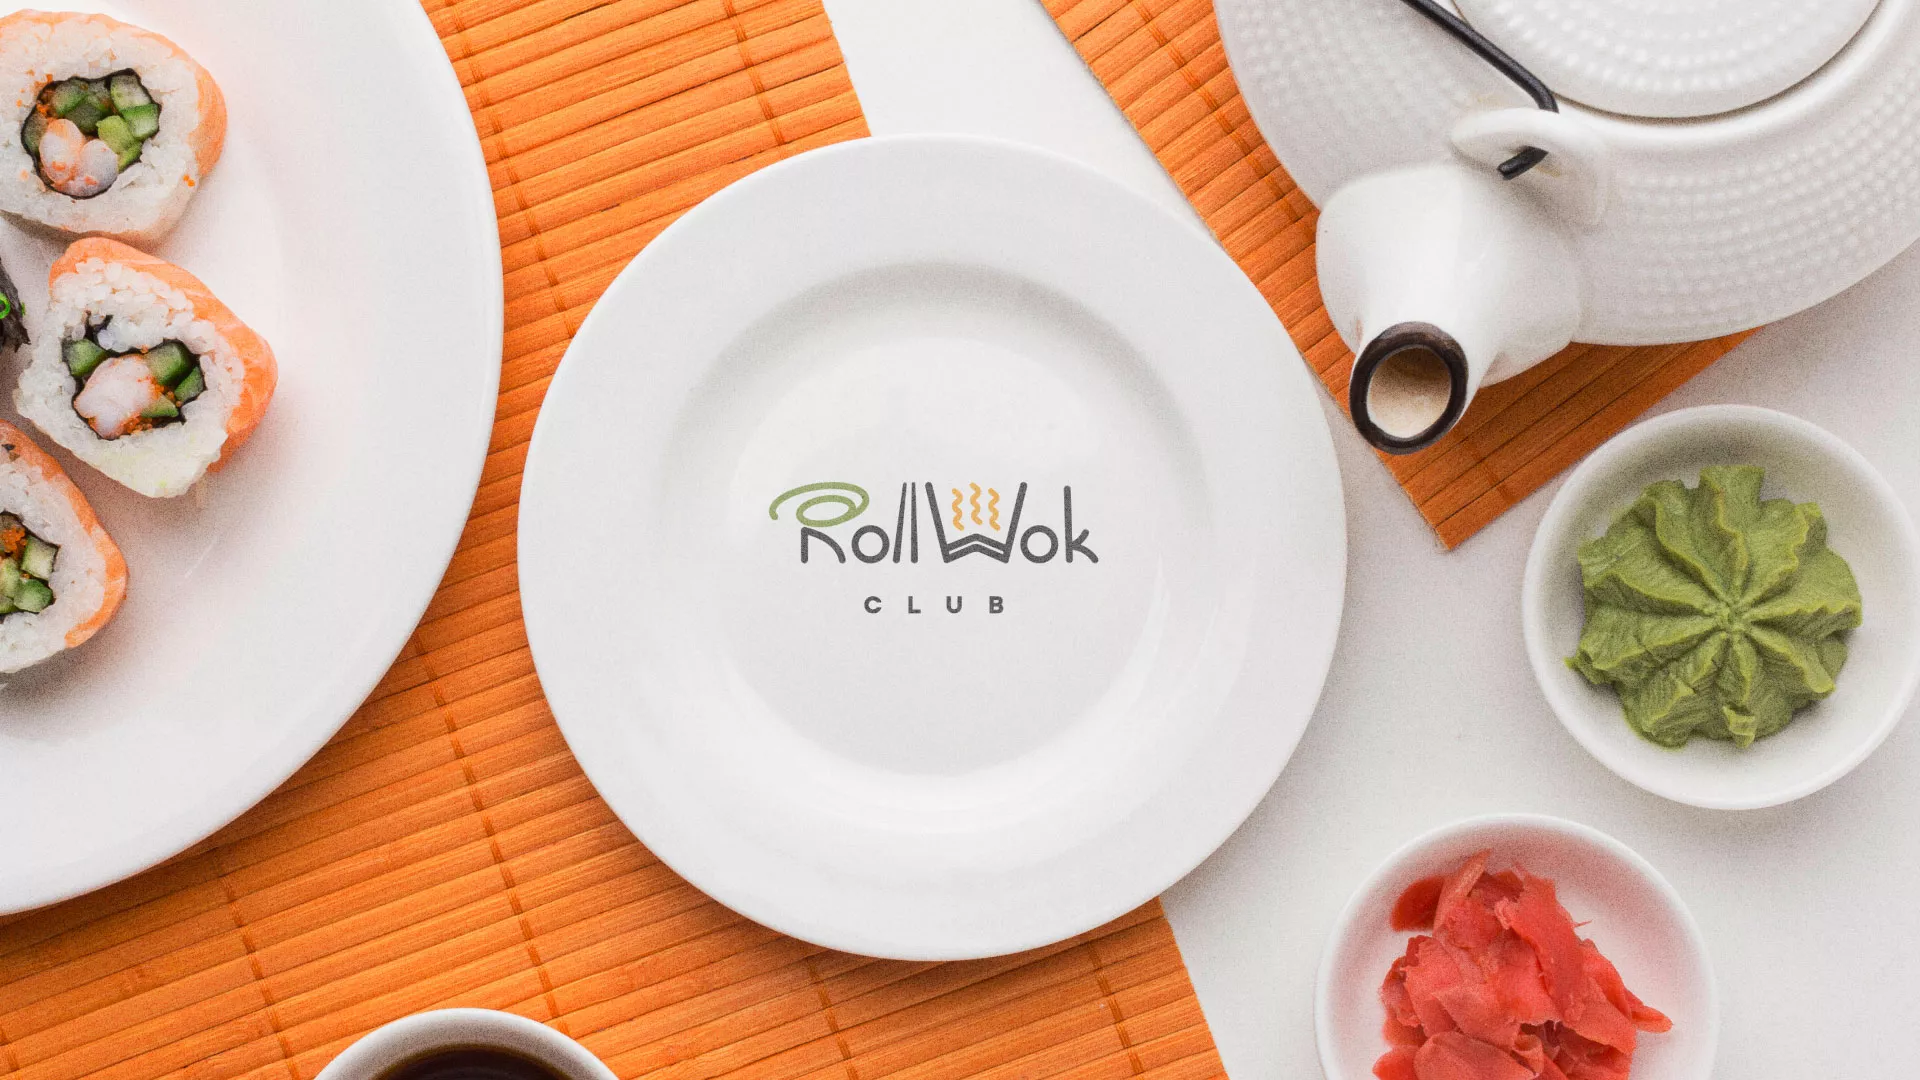 Разработка логотипа и фирменного стиля суши-бара «Roll Wok Club» в Миньяре